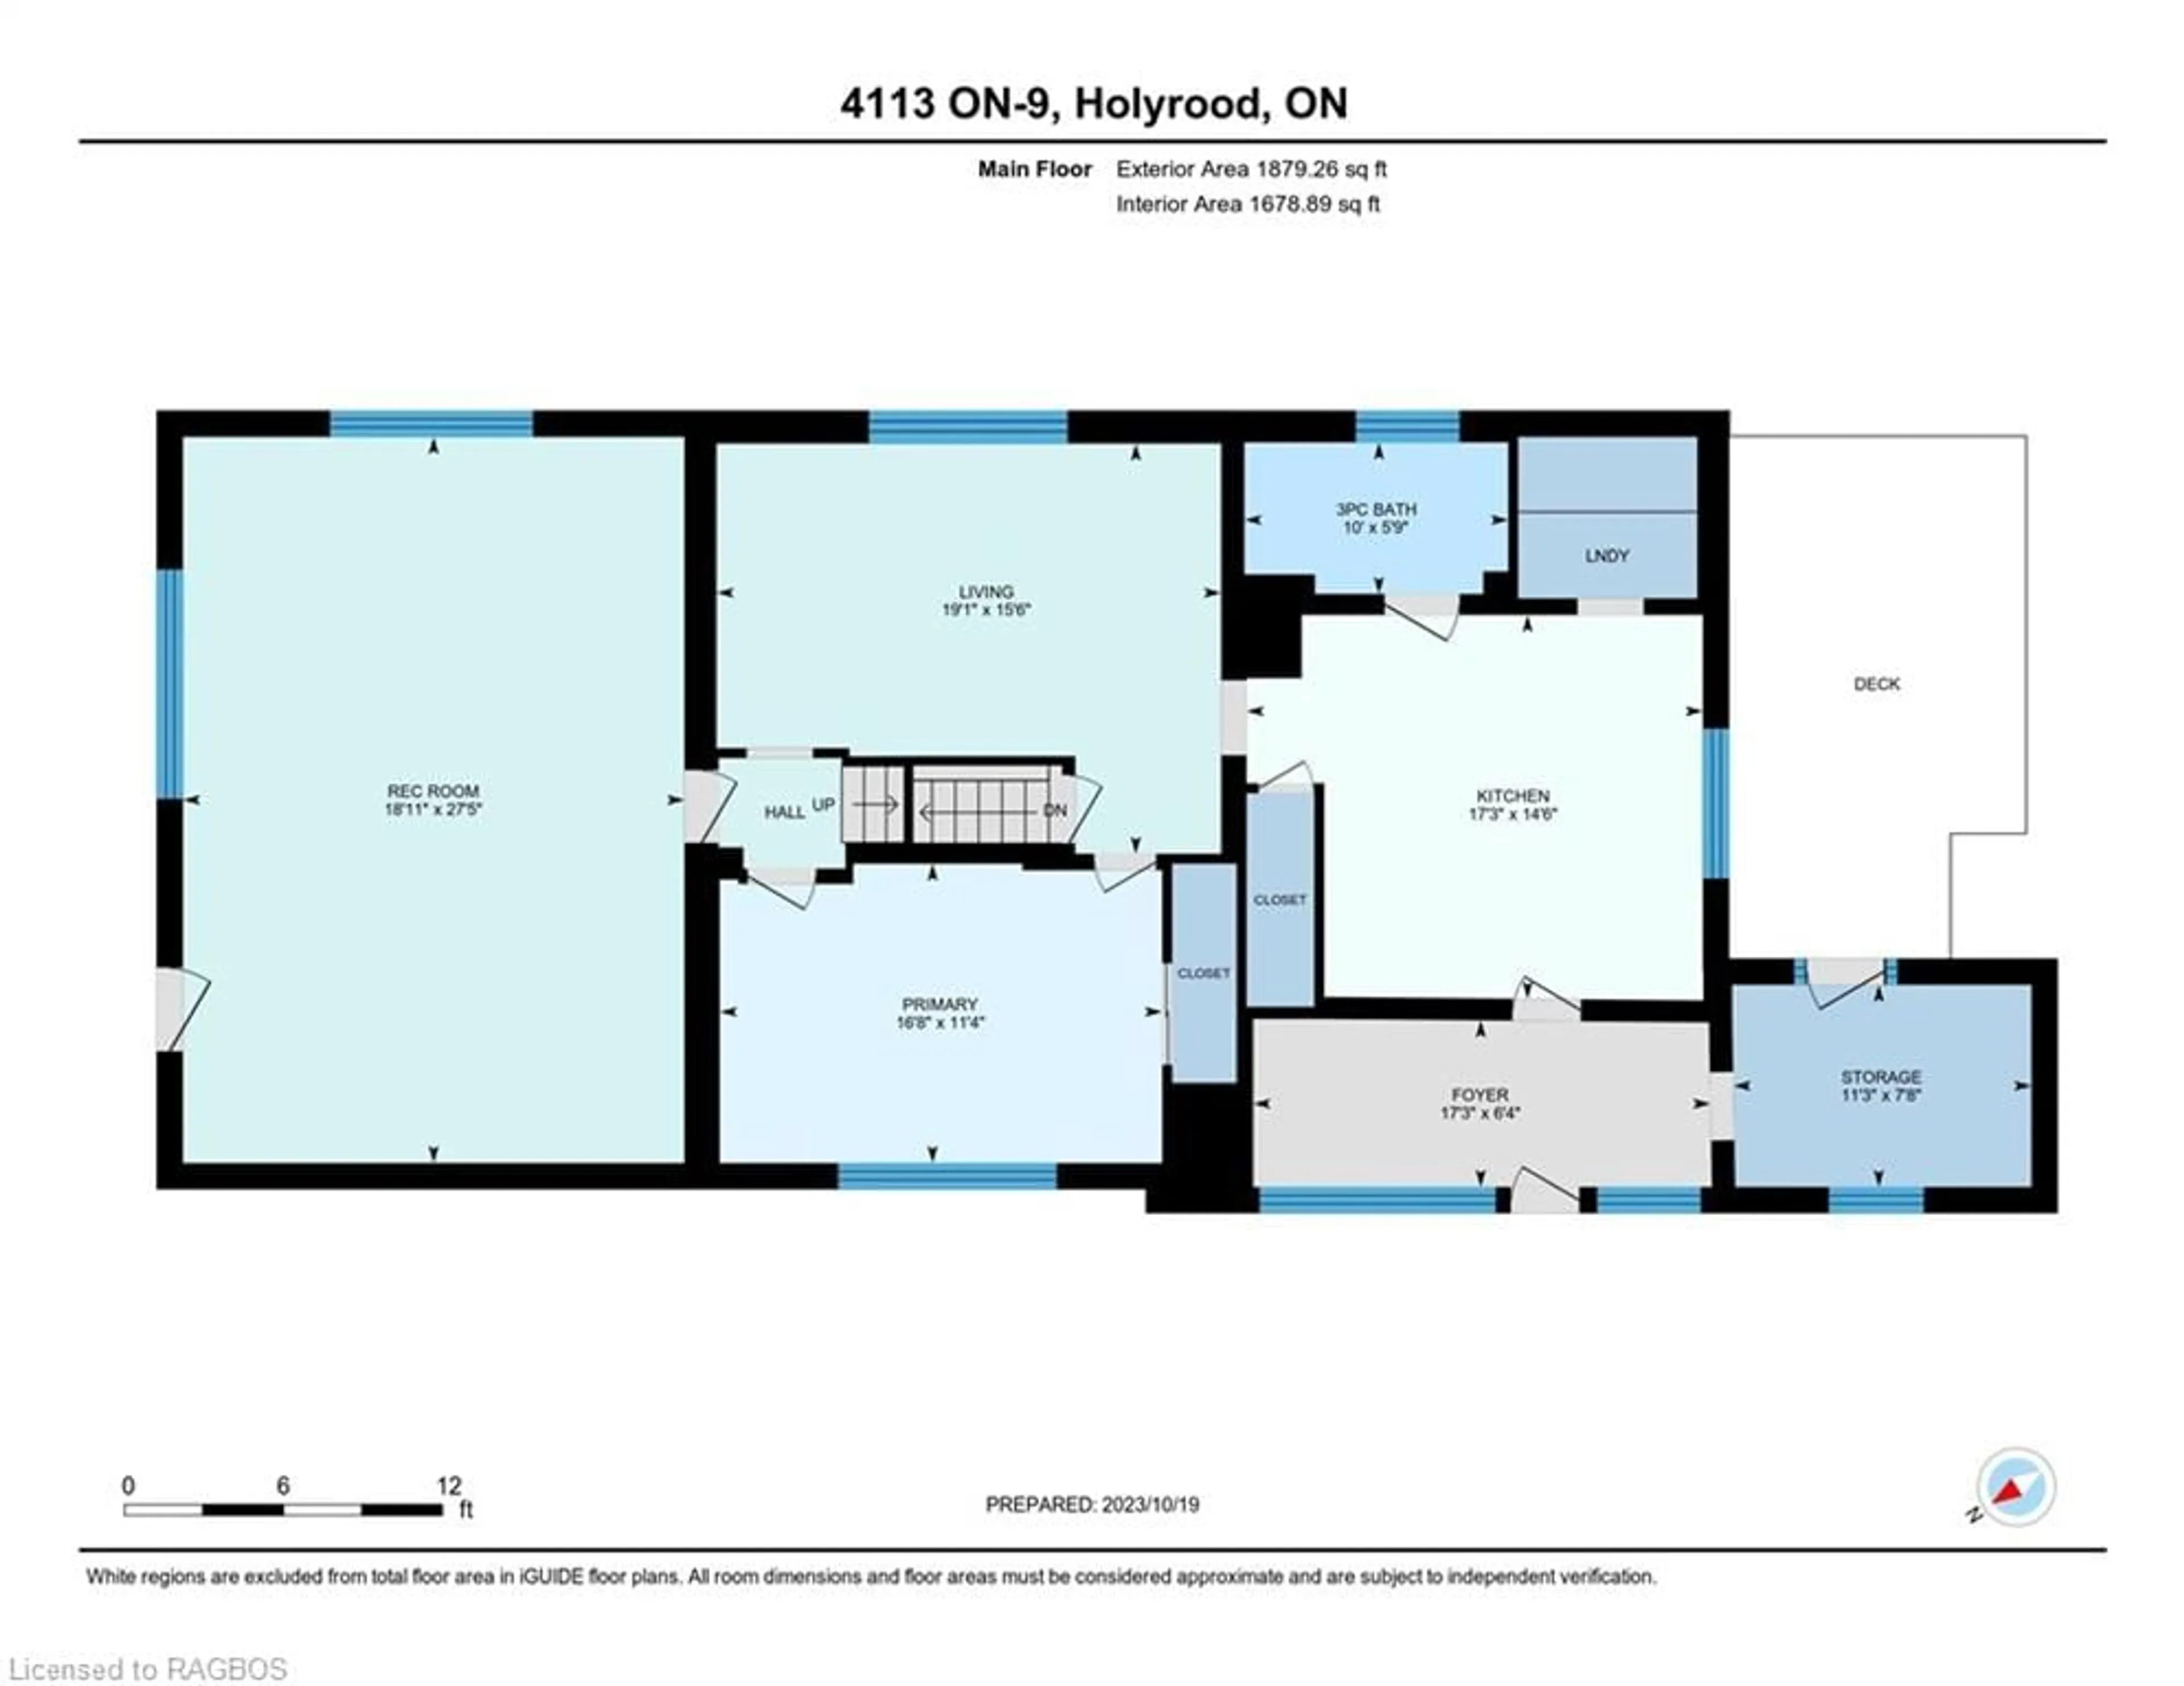 Floor plan for 4113 Highway 9 Hwy, Holyrood Ontario N0G 2B0